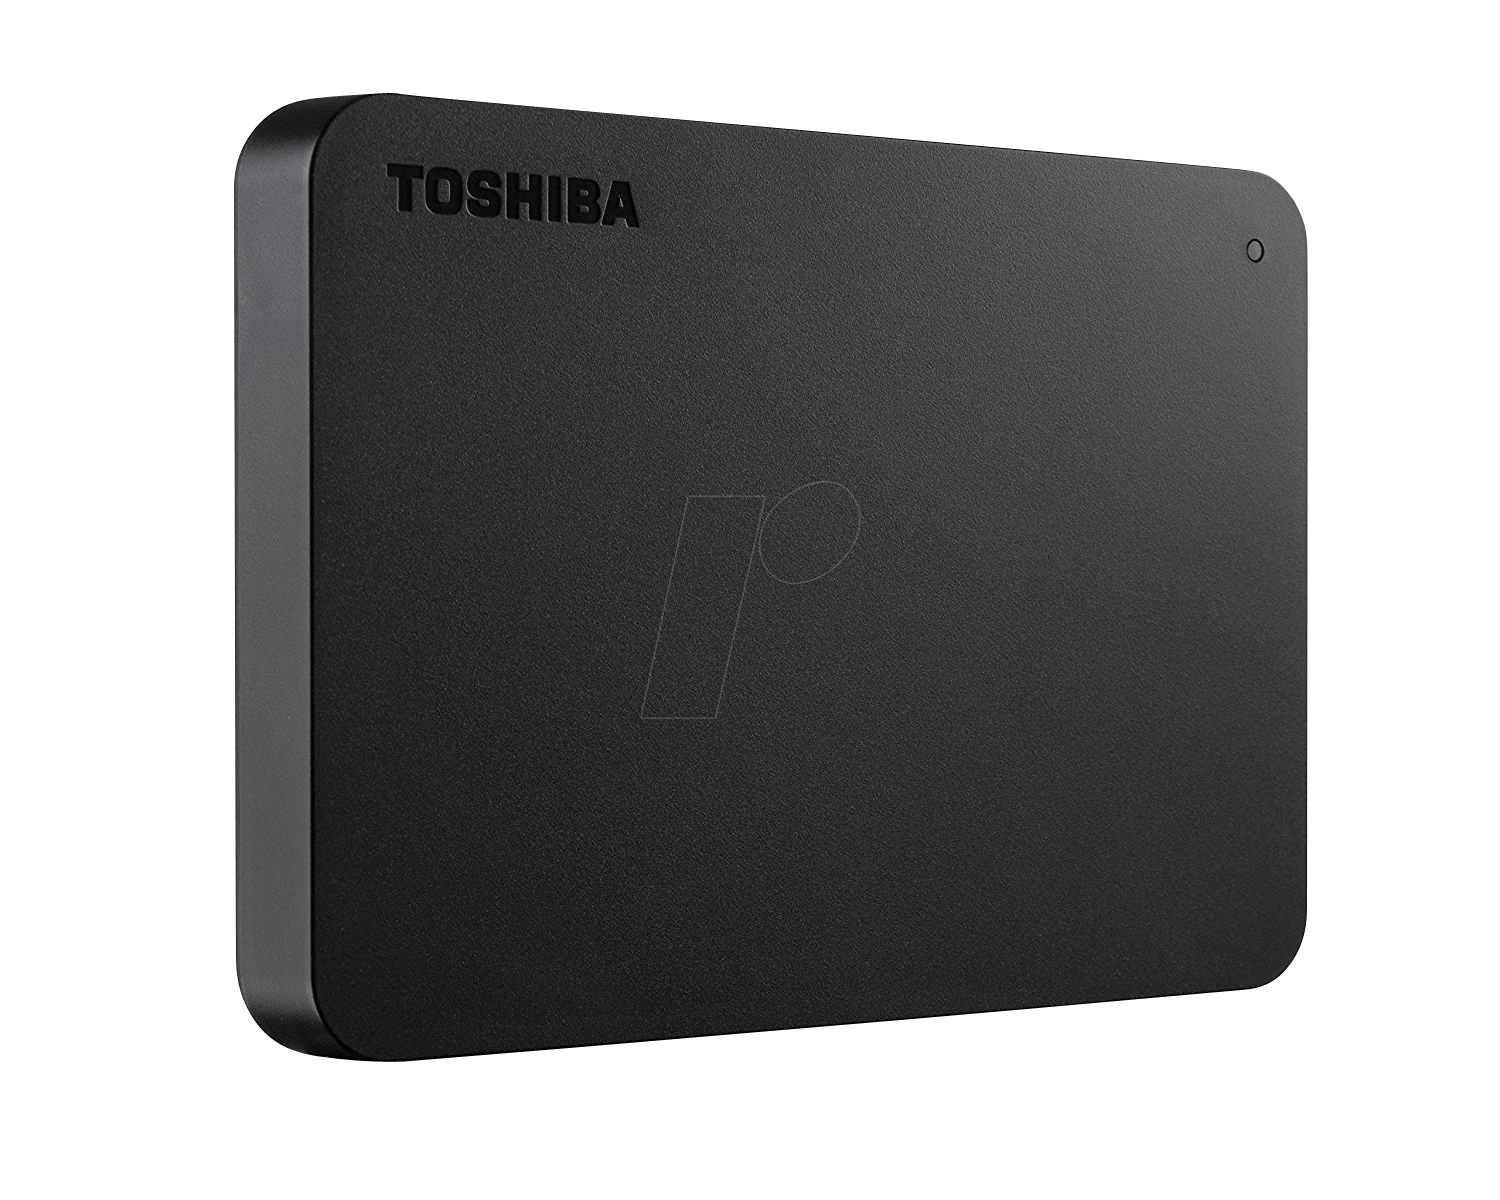 Toshiba Canvio Basics New